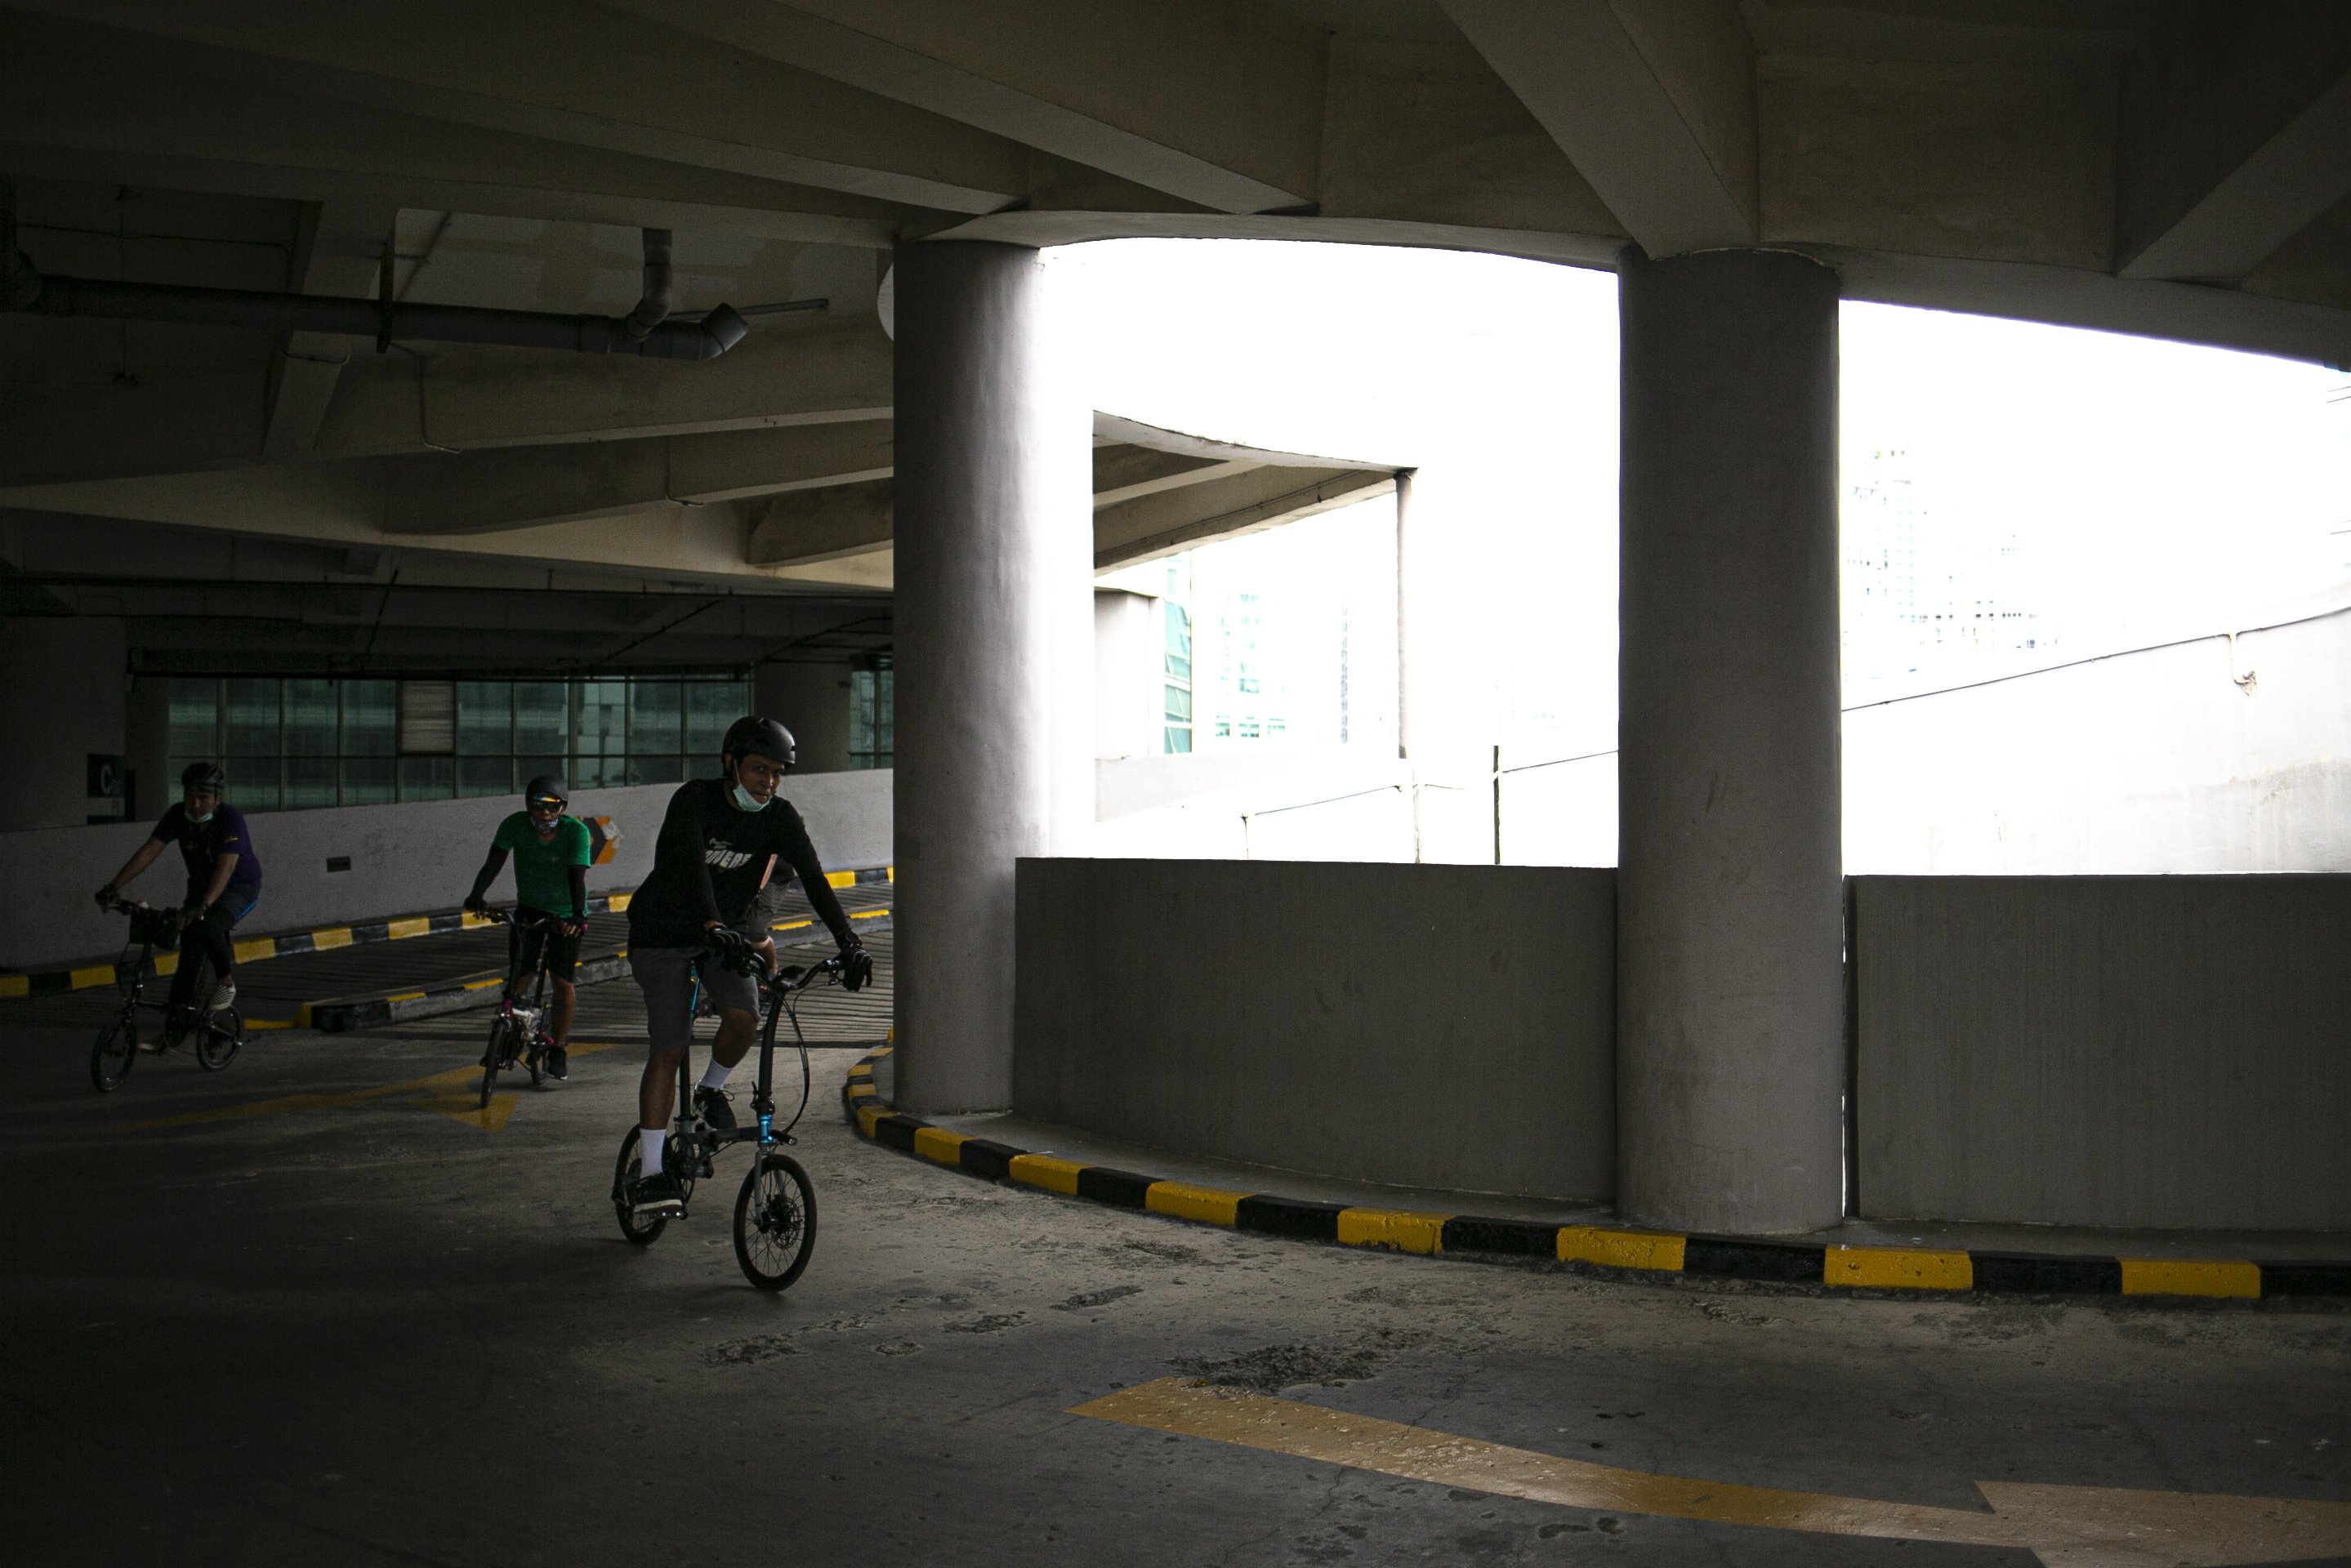 Warga mengayuh sepedanya di jalan spiral menuju gedung parkir di sebuah pusat perbelanjaan, Jakarta, Sabtu (5/12/2020). Selain untuk meningkatkan kebugaran dan imunitas tubuh di tengah pandemi COVID-19, kegiatan tersebut juga bertujuan untuk meningkatkan animo masyarakat berkunjung ke pusat perbelanjaan.